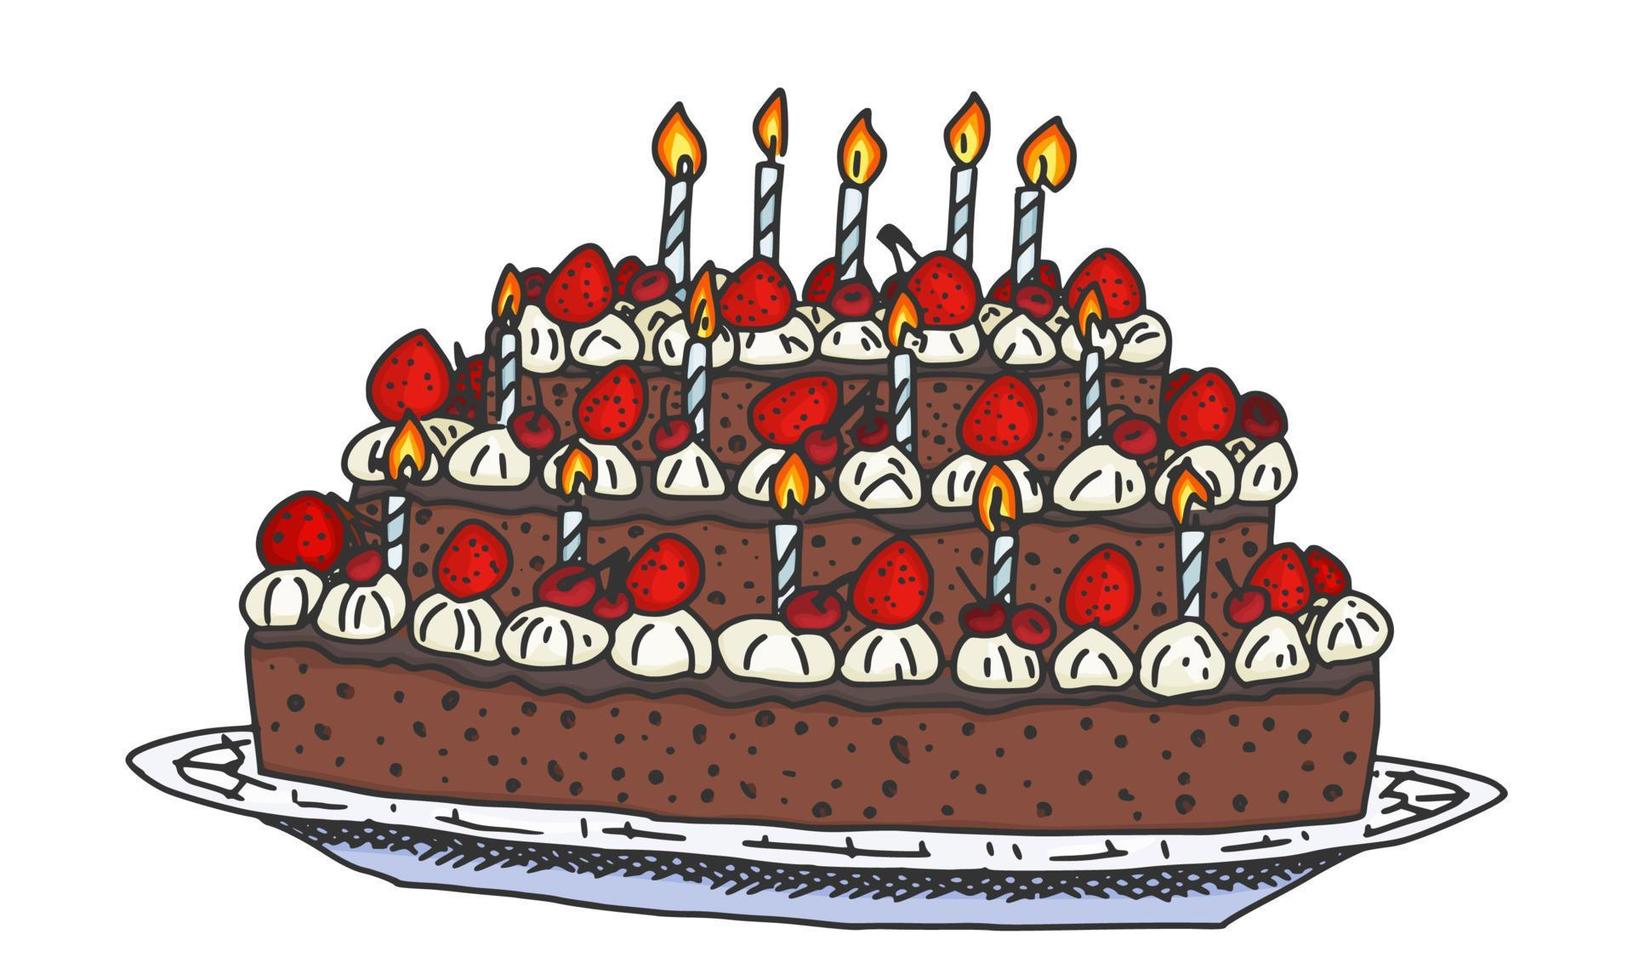 Geburtstagstorte mit Kerzen und Beeren. Gekritzel vektor